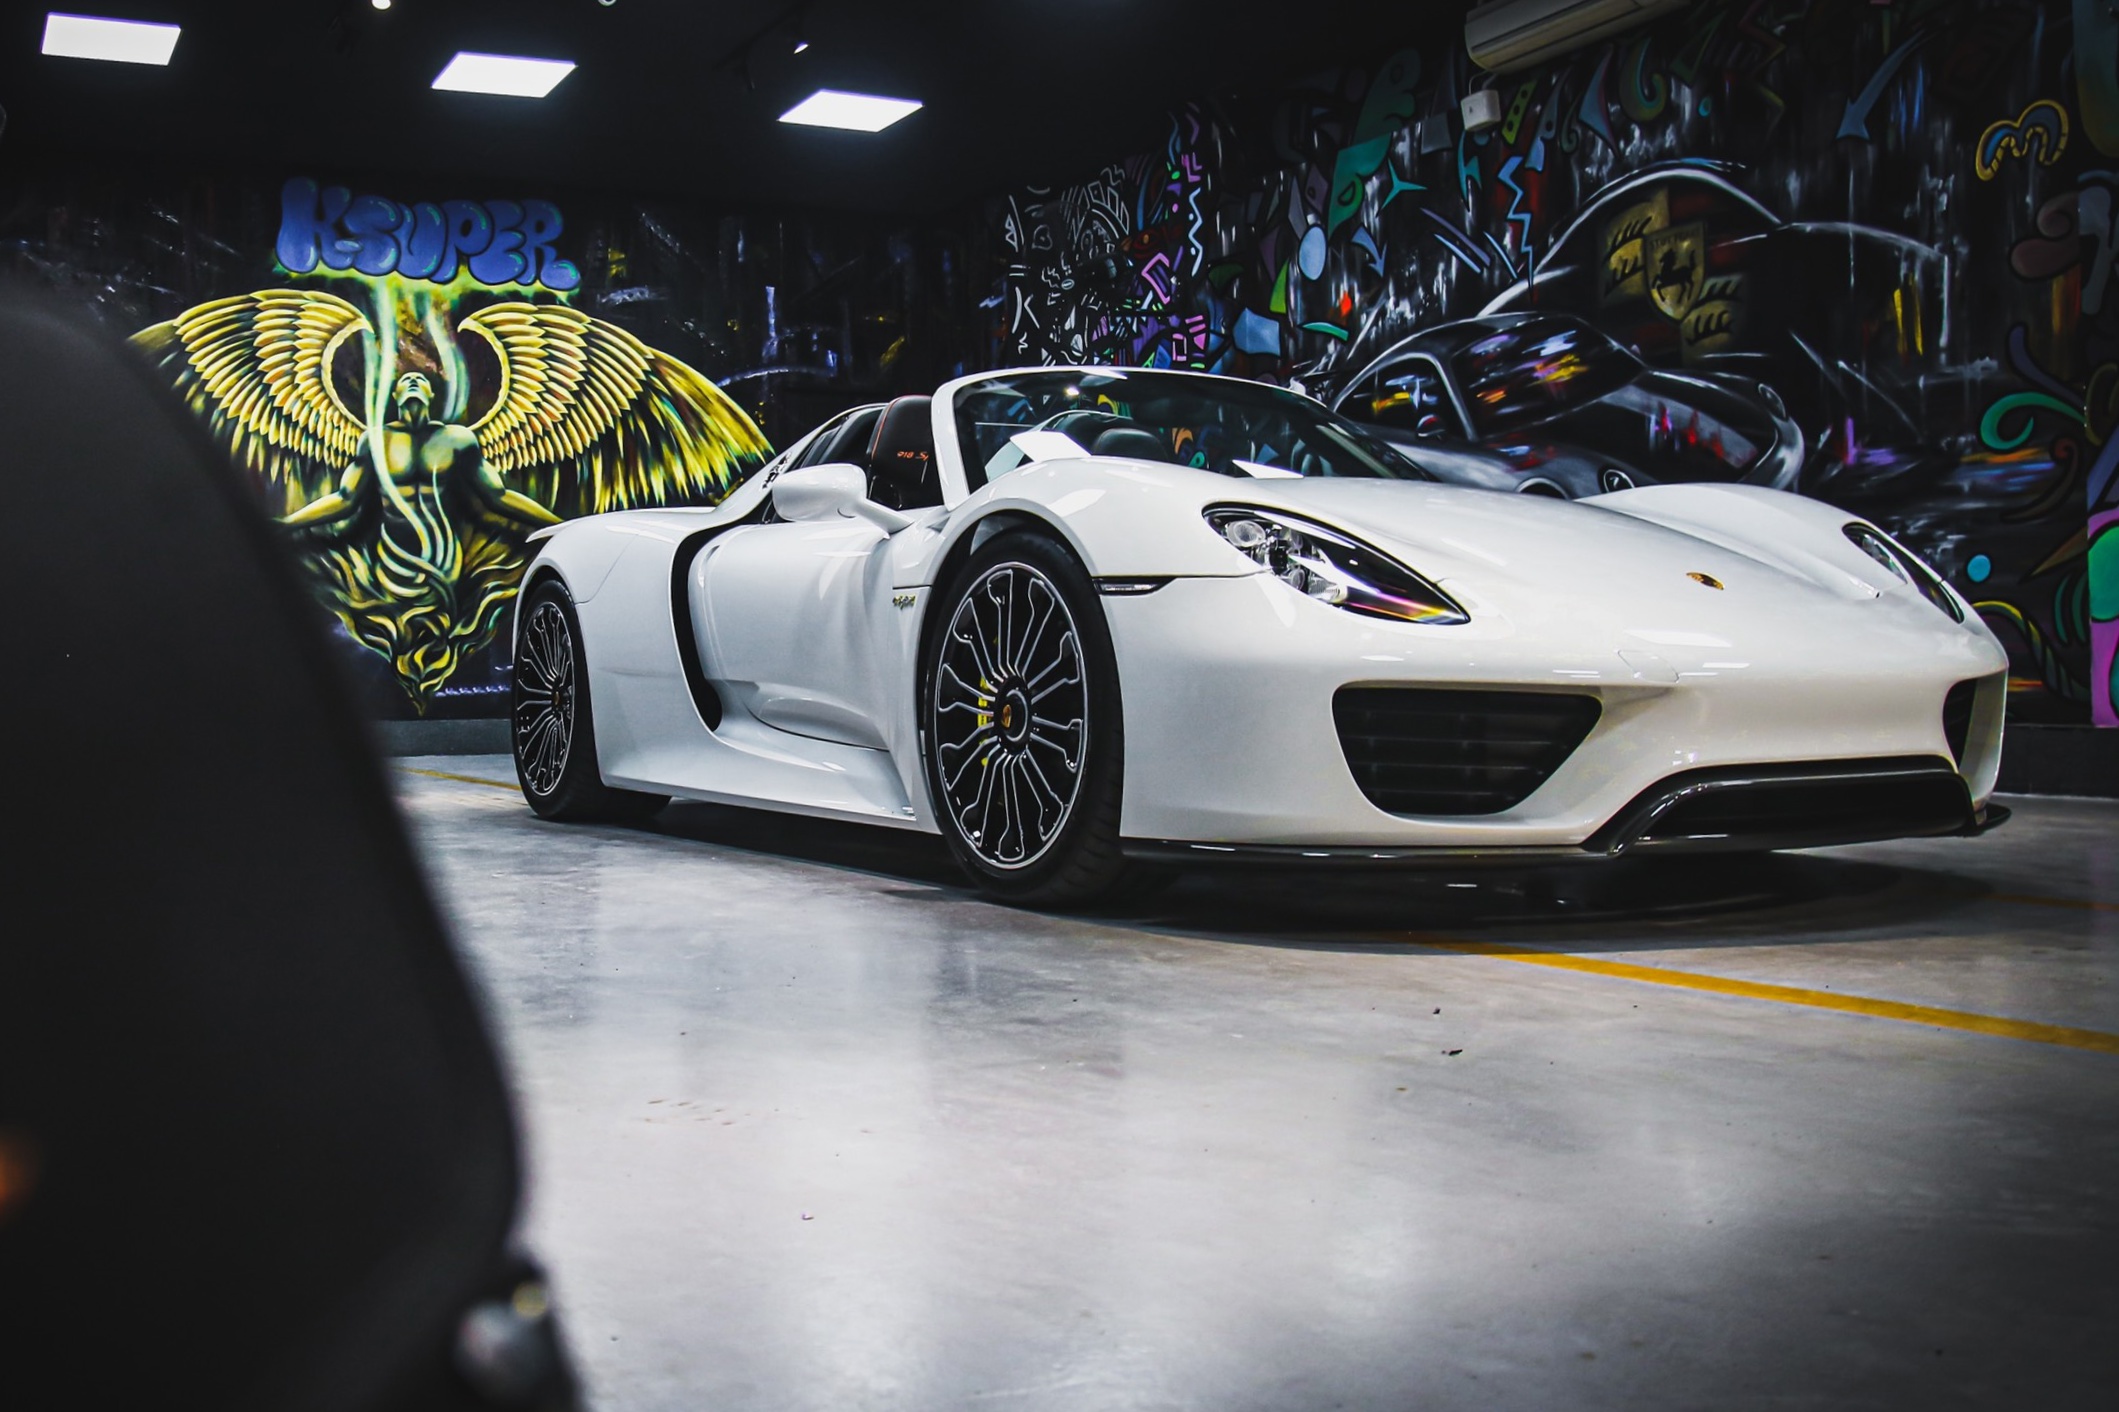 Nếu bạn là một tín đồ của siêu xe Porsche, thì hình nền siêu xe Porsche chính là lựa chọn hoàn hảo để trang trí cho thiết bị của mình. Hãy cùng chiêm ngưỡng thiết kế tinh xảo và đường nét hoàn hảo của siêu xe này qua hình ảnh độc đáo này!